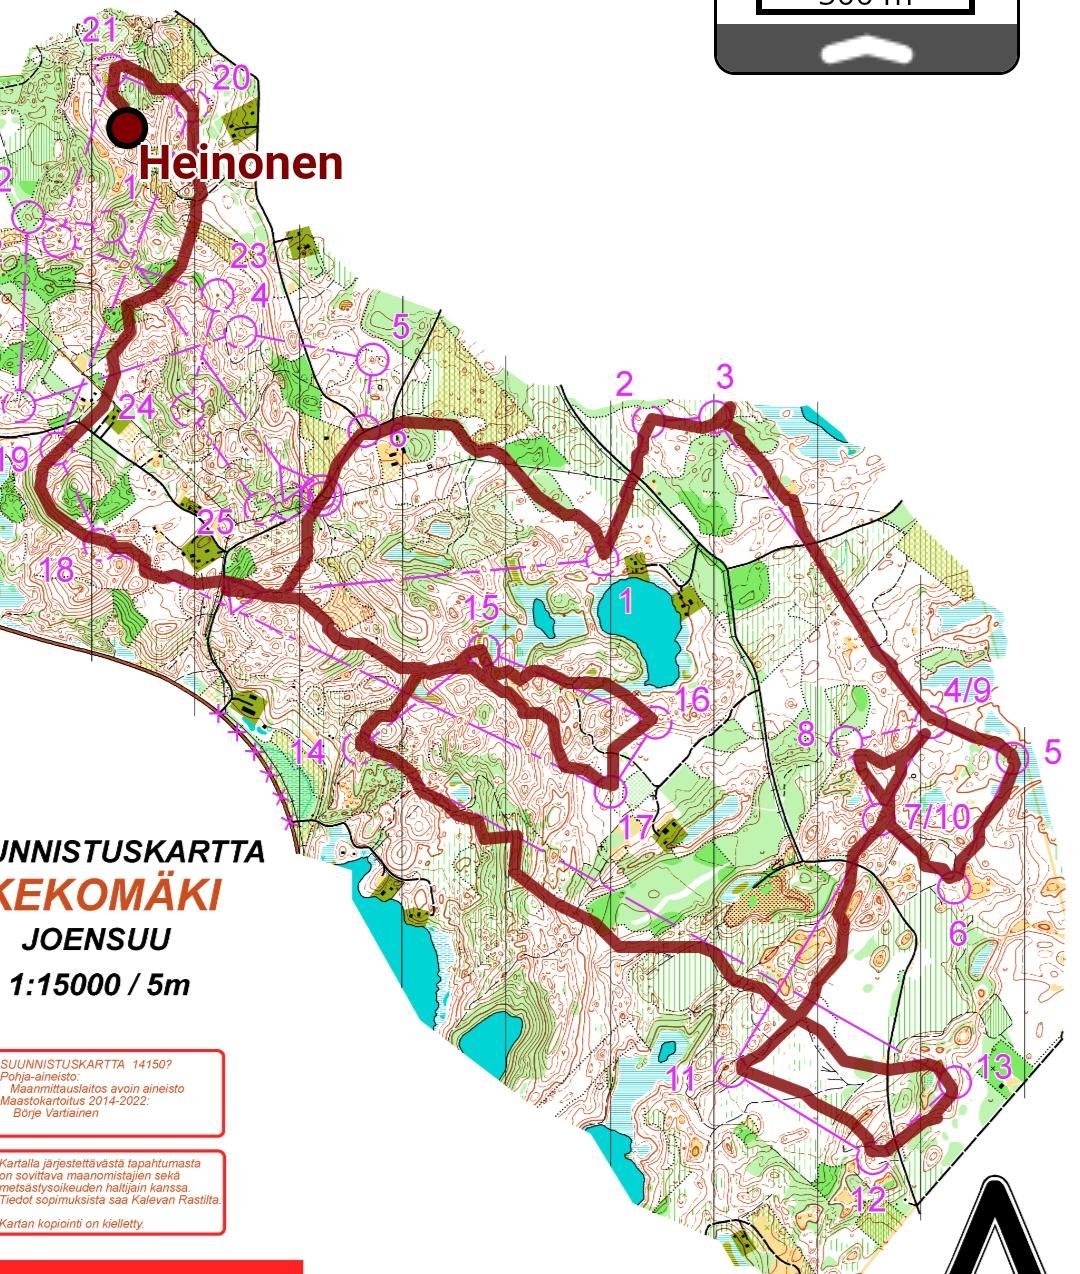 Kekomäki (24.06.2022)